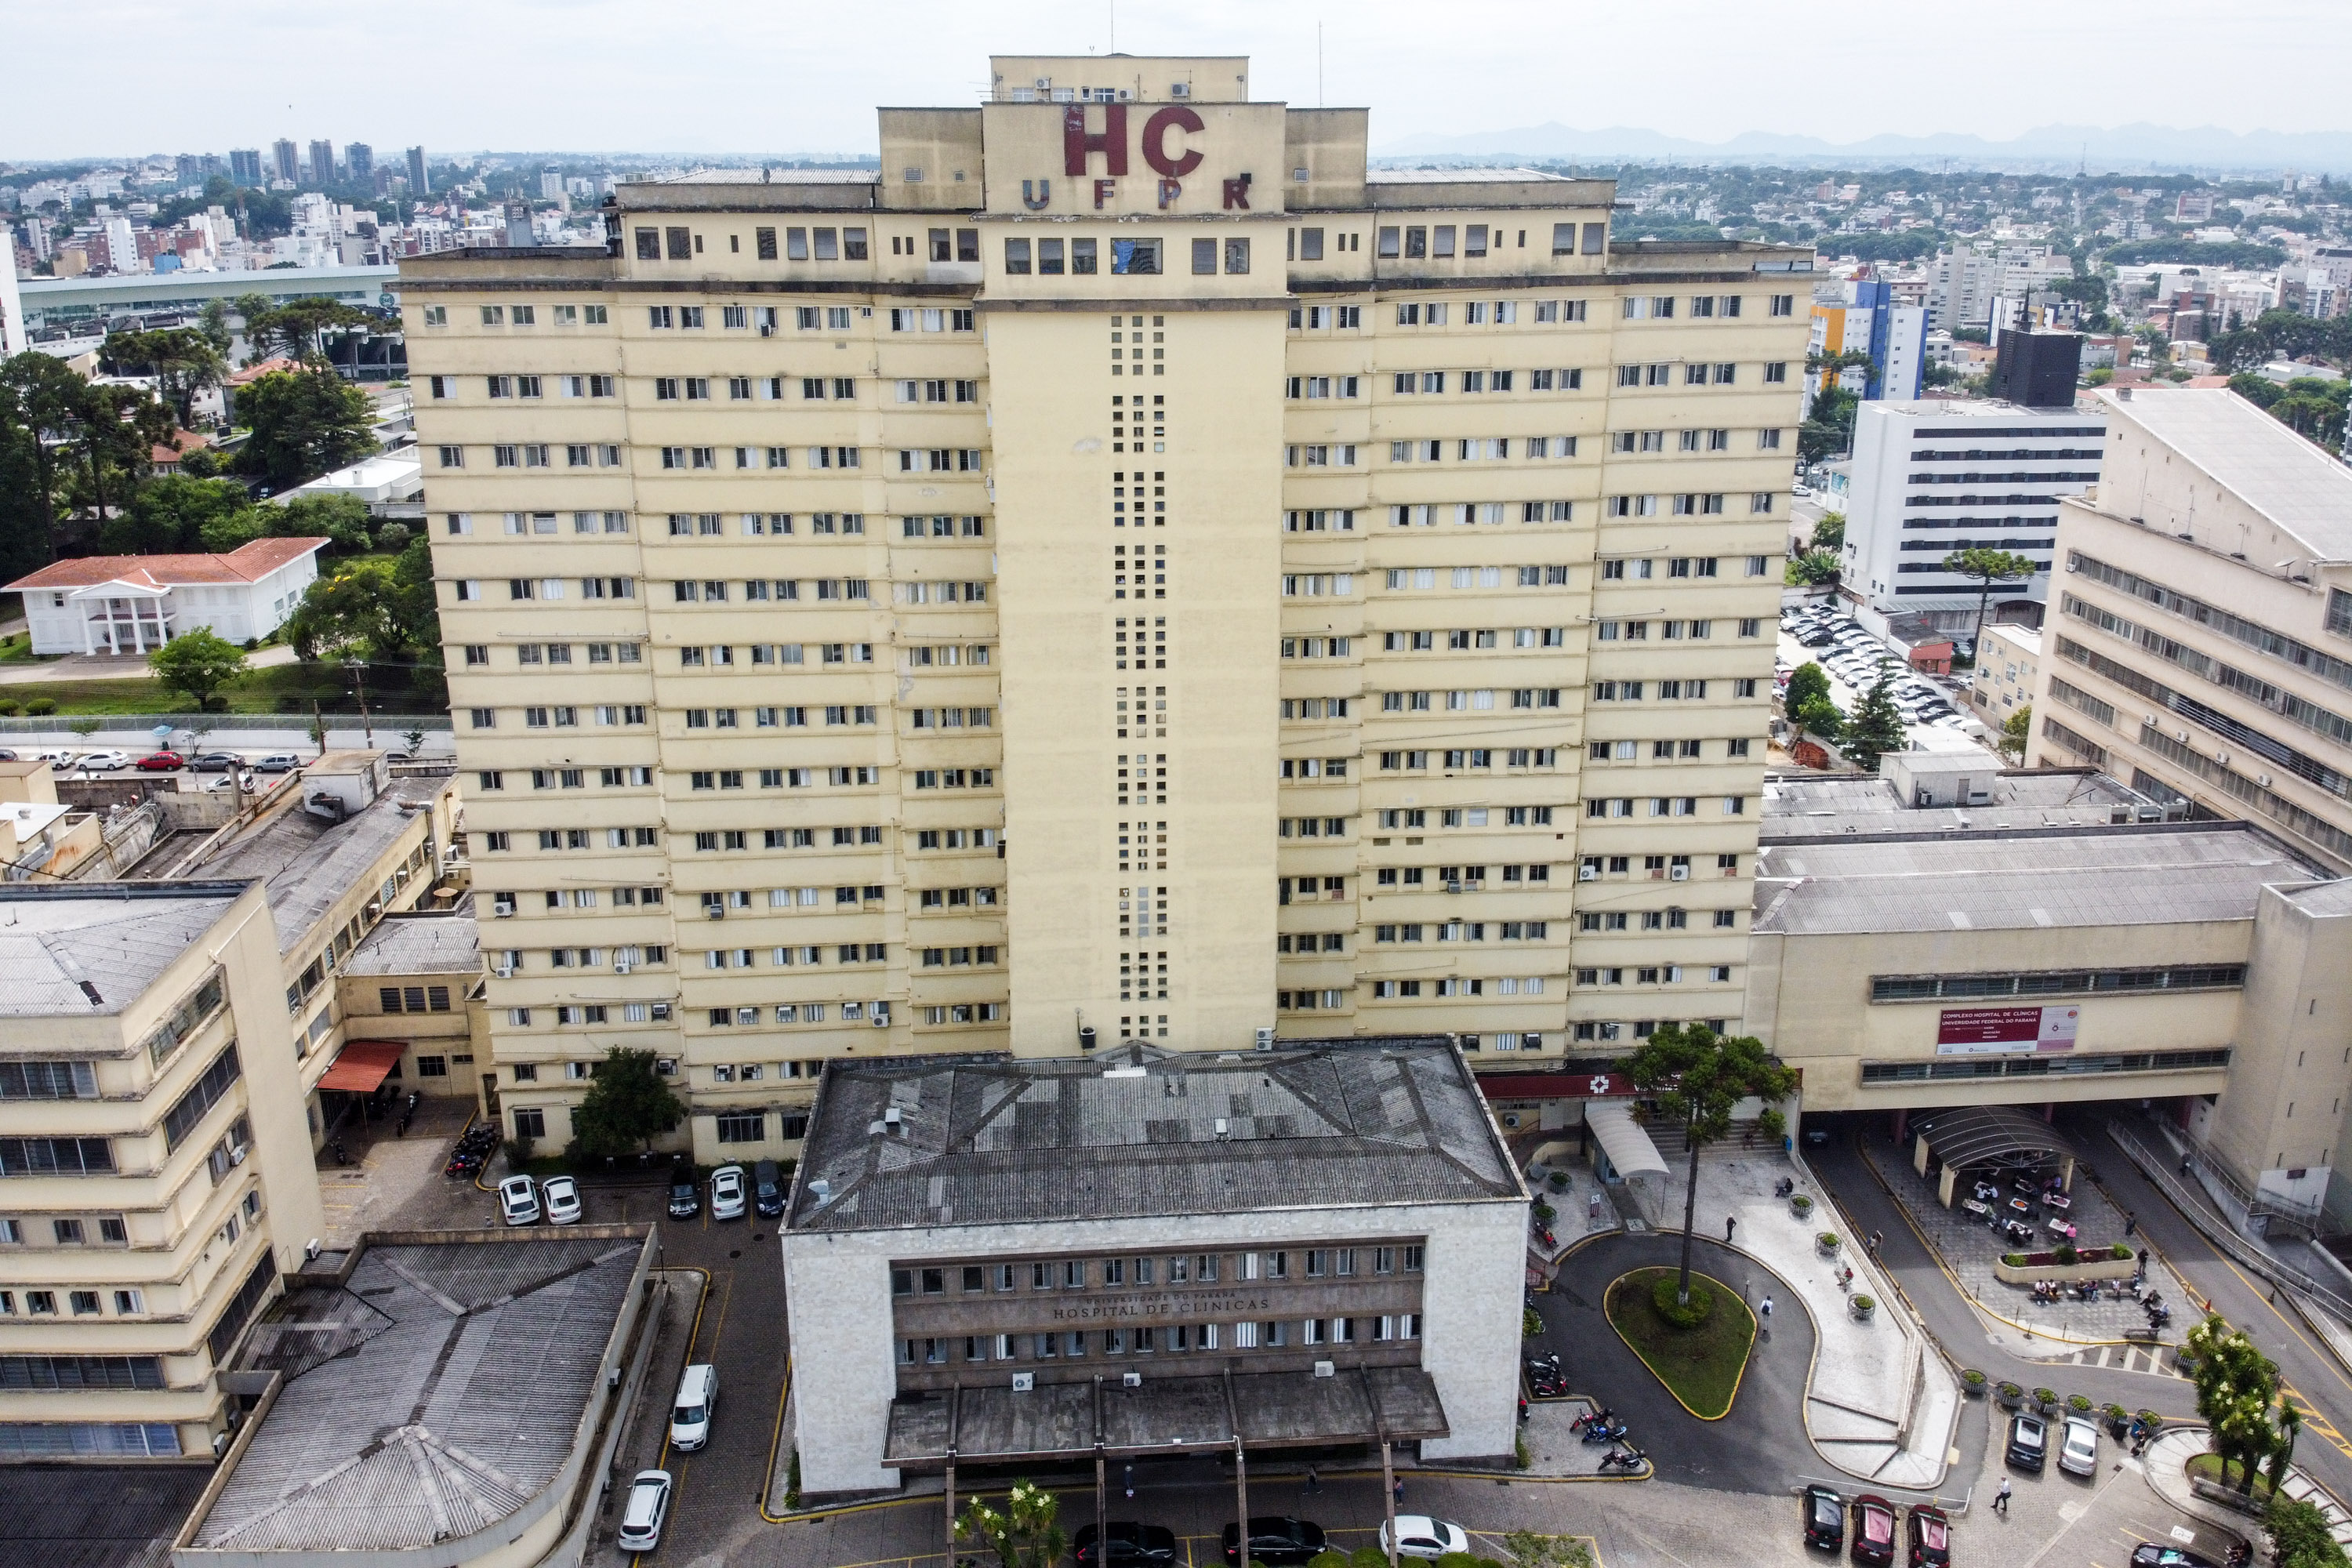 Arquivo de Complexo Hospital de Clínicas - Universidade Federal do Paraná